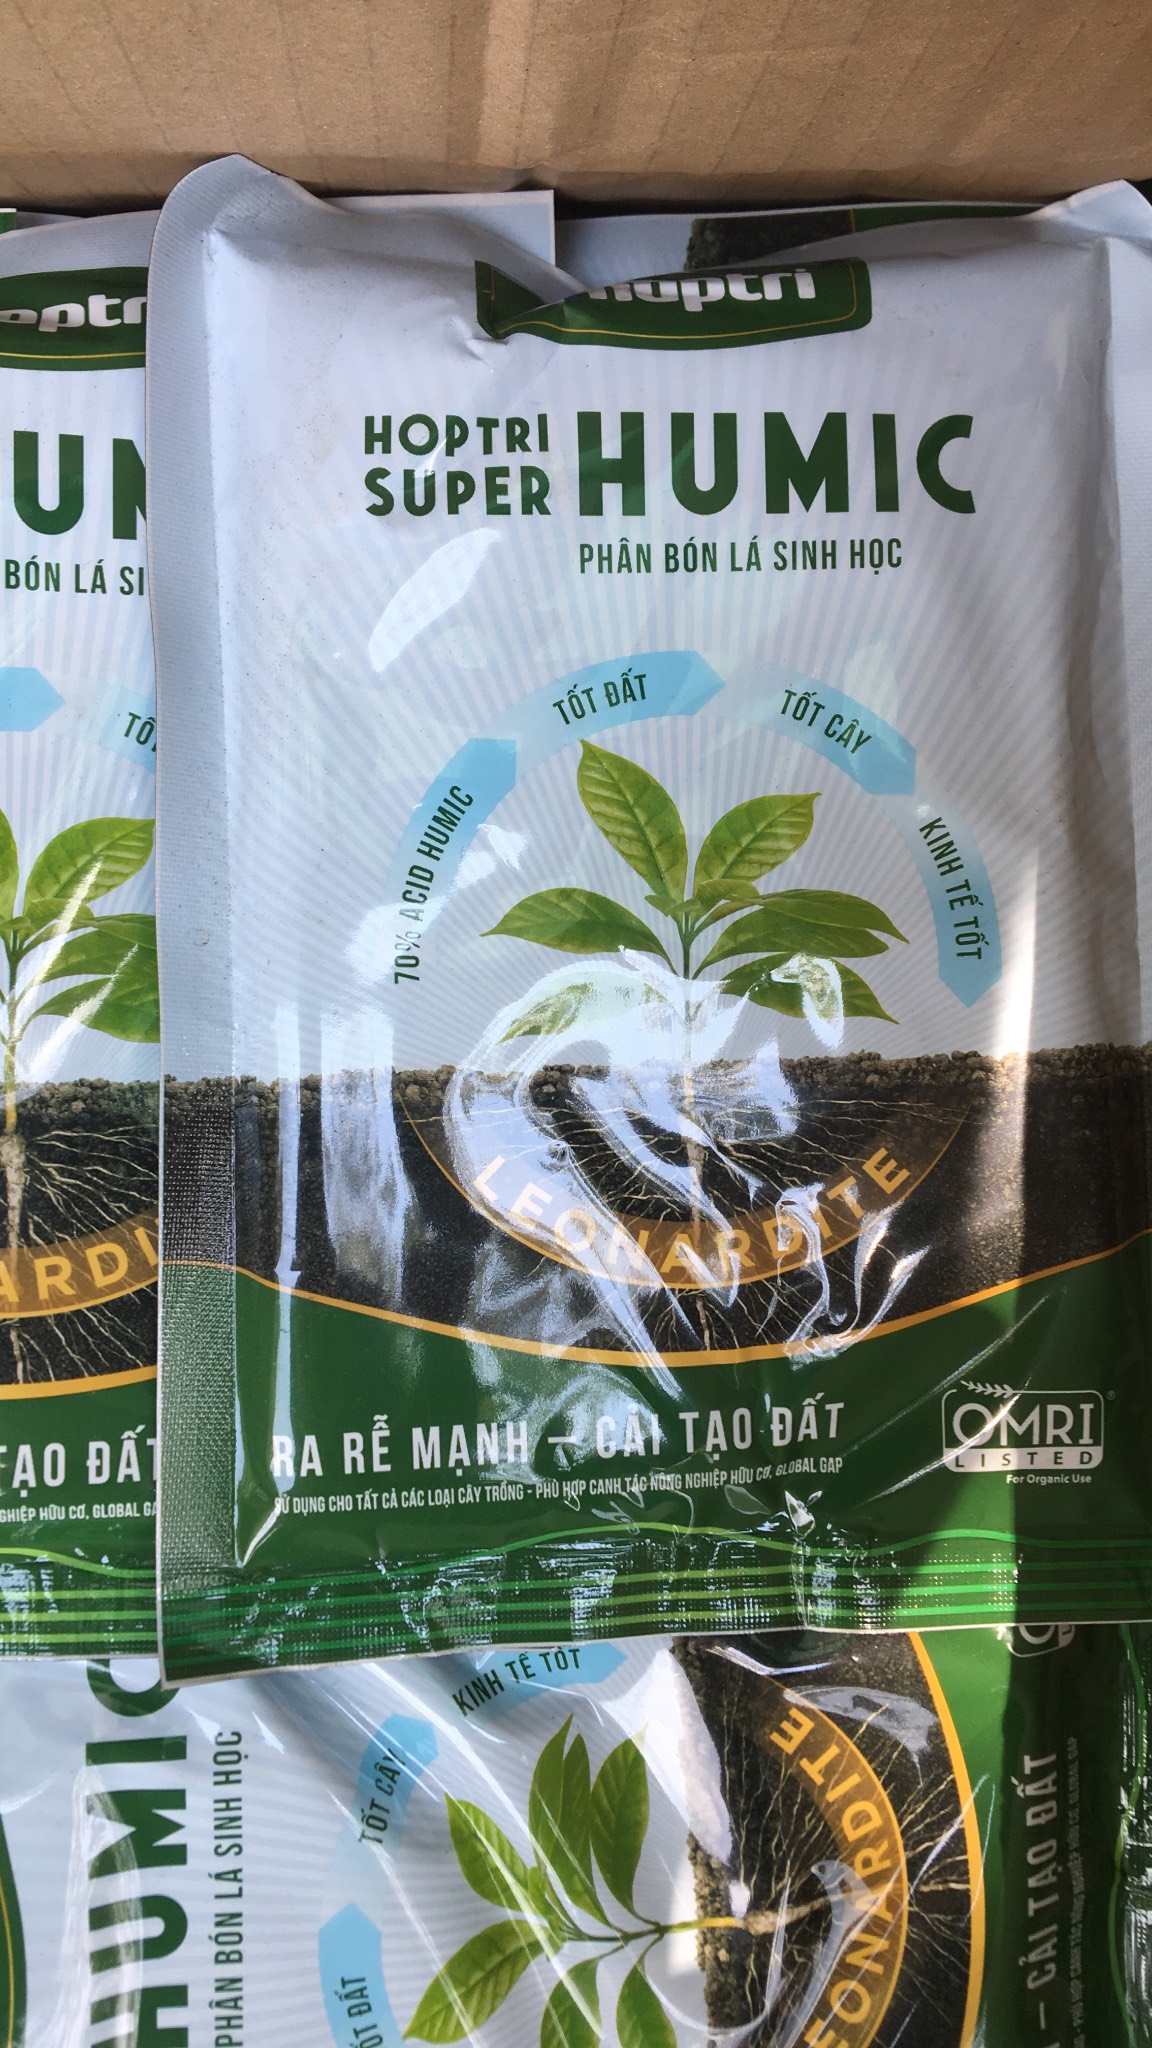 Phân bón Humic HỢP TRÍ SUPER HUMIC ra rễ cực mạnh gói 250gr